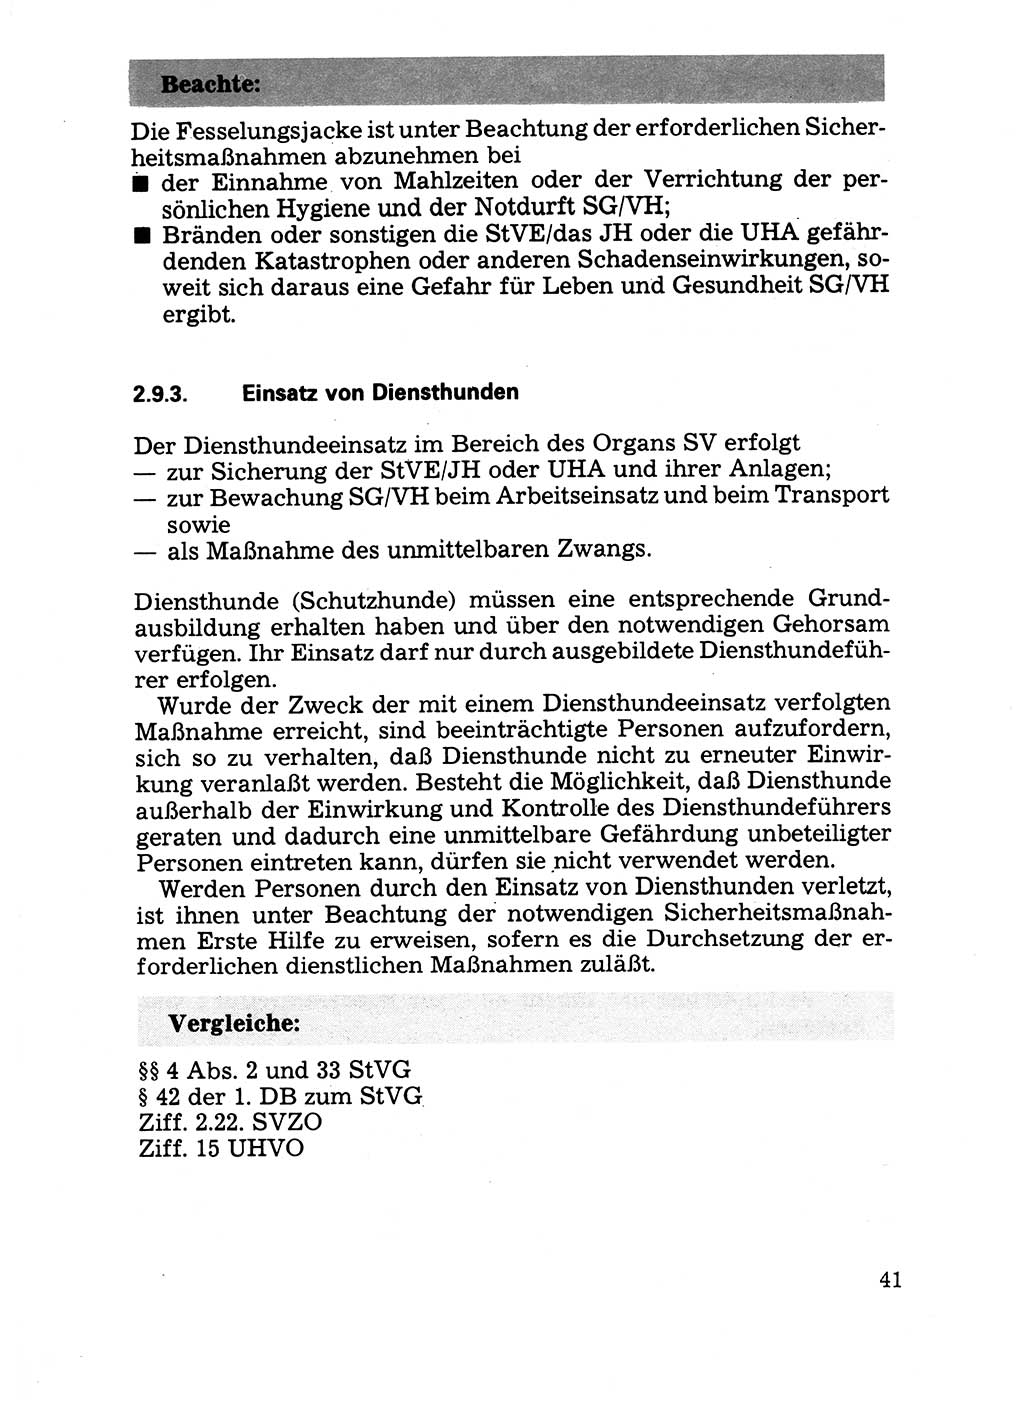 Handbuch für operative Dienste, Abteilung Strafvollzug (SV) [Ministerium des Innern (MdI) Deutsche Demokratische Republik (DDR)] 1981, Seite 41 (Hb. op. D. Abt. SV MdI DDR 1981, S. 41)